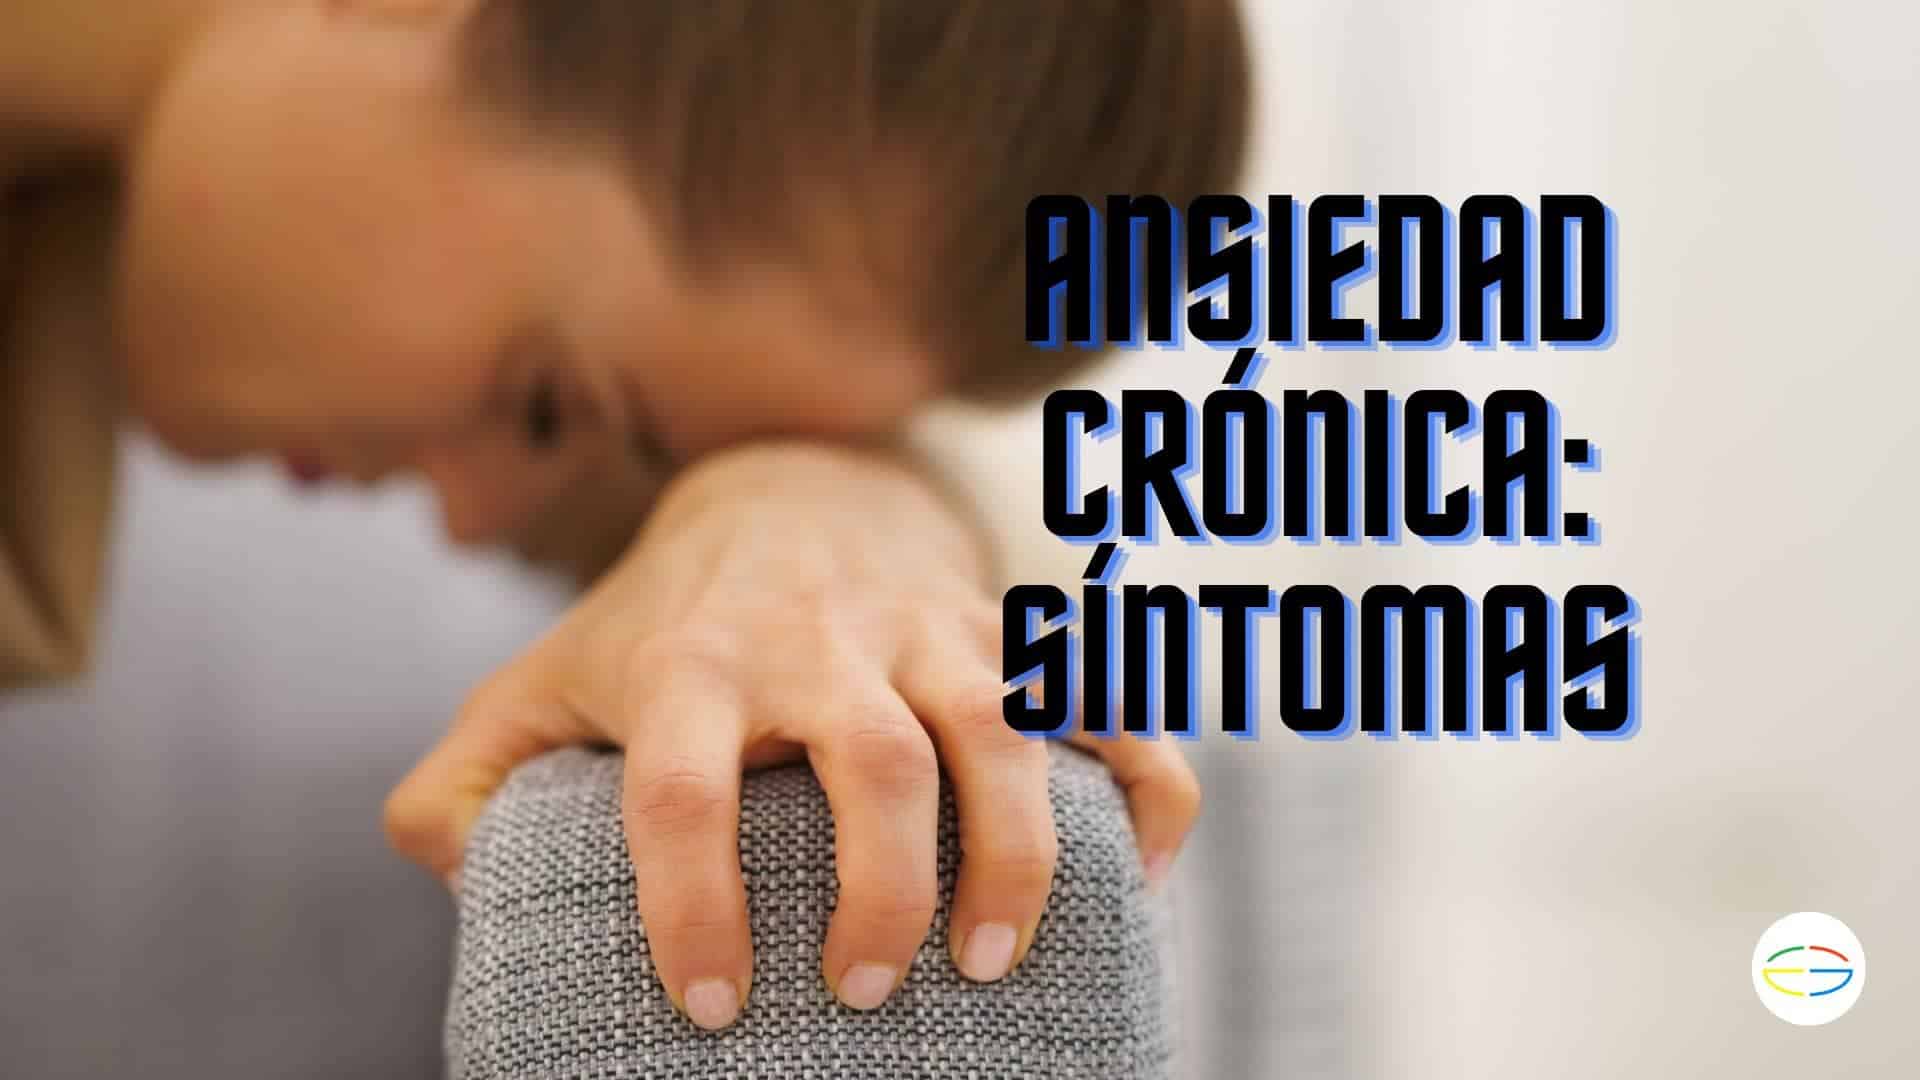 anciedad-cronica-sintomas